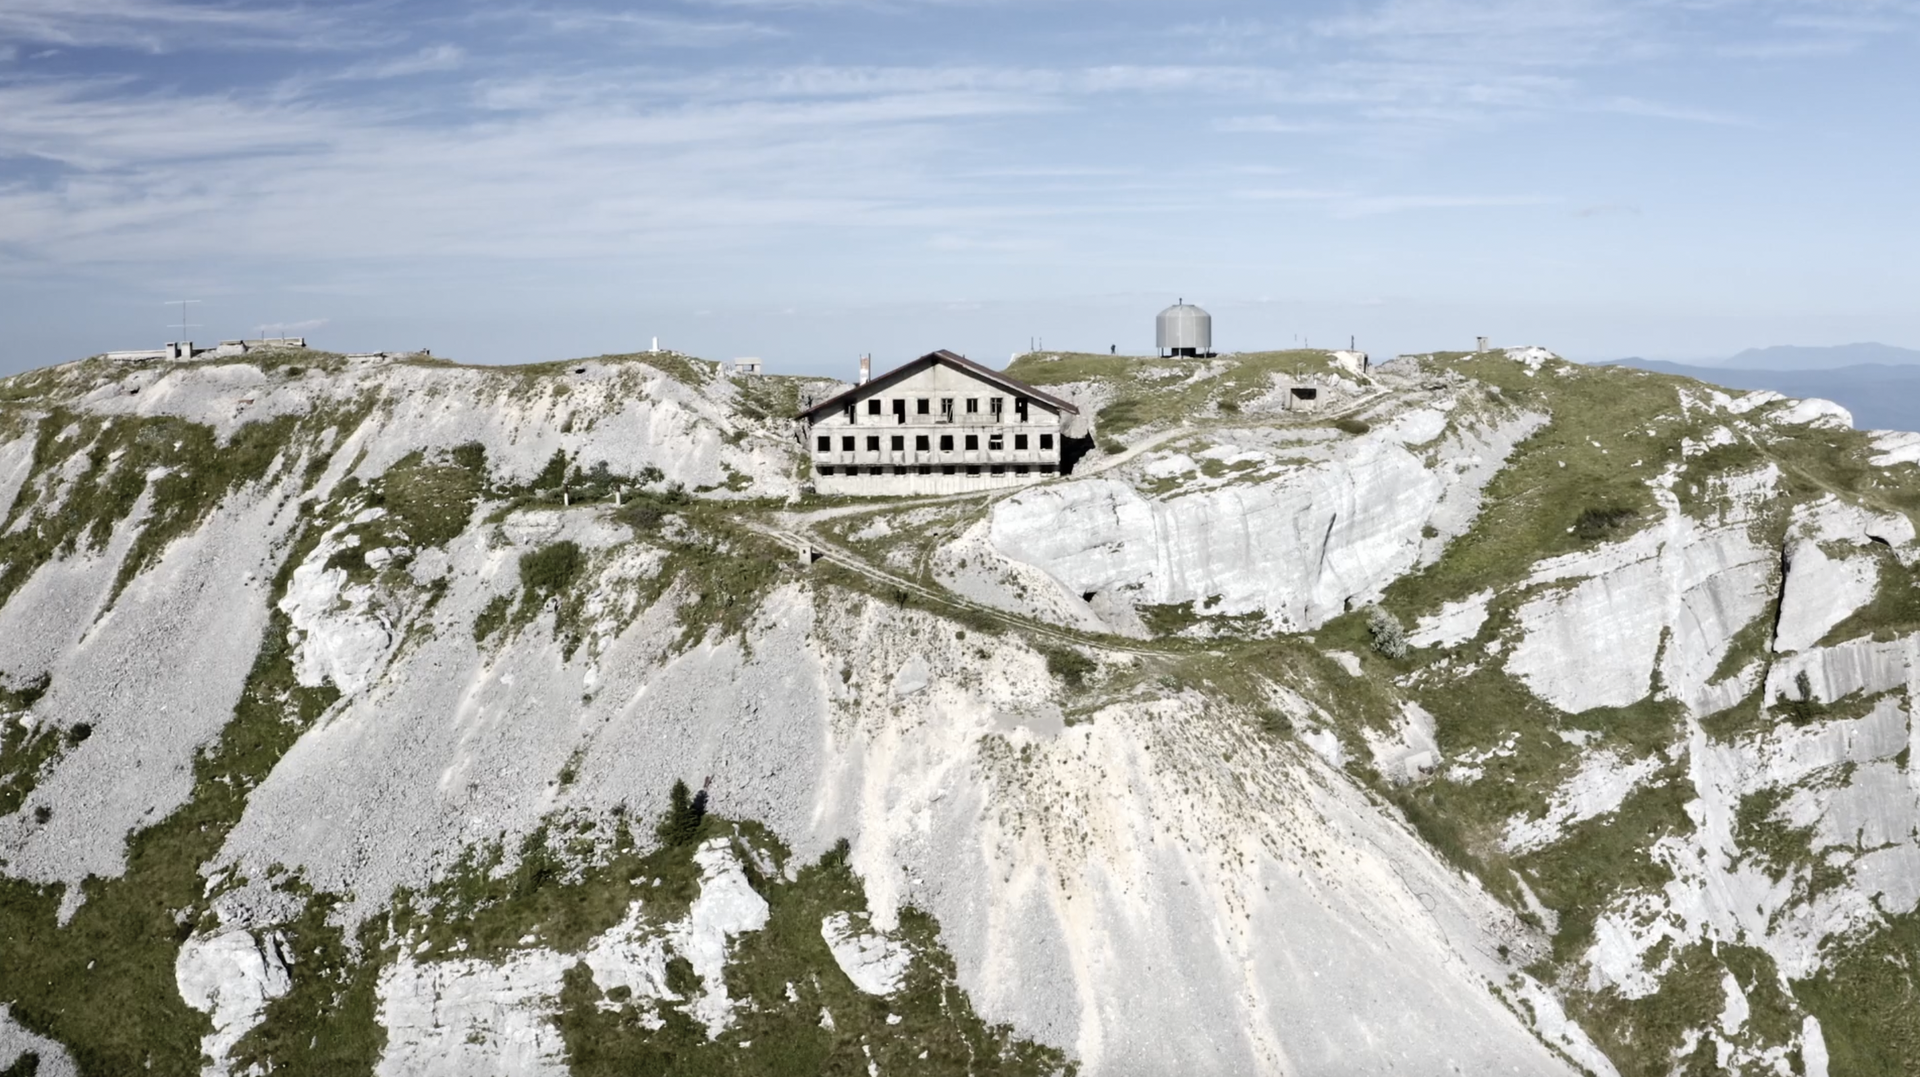 VIDEO Podzemni grad koji može preživjeti nuklearni udar. Srbi su ga minirali dok su bježali